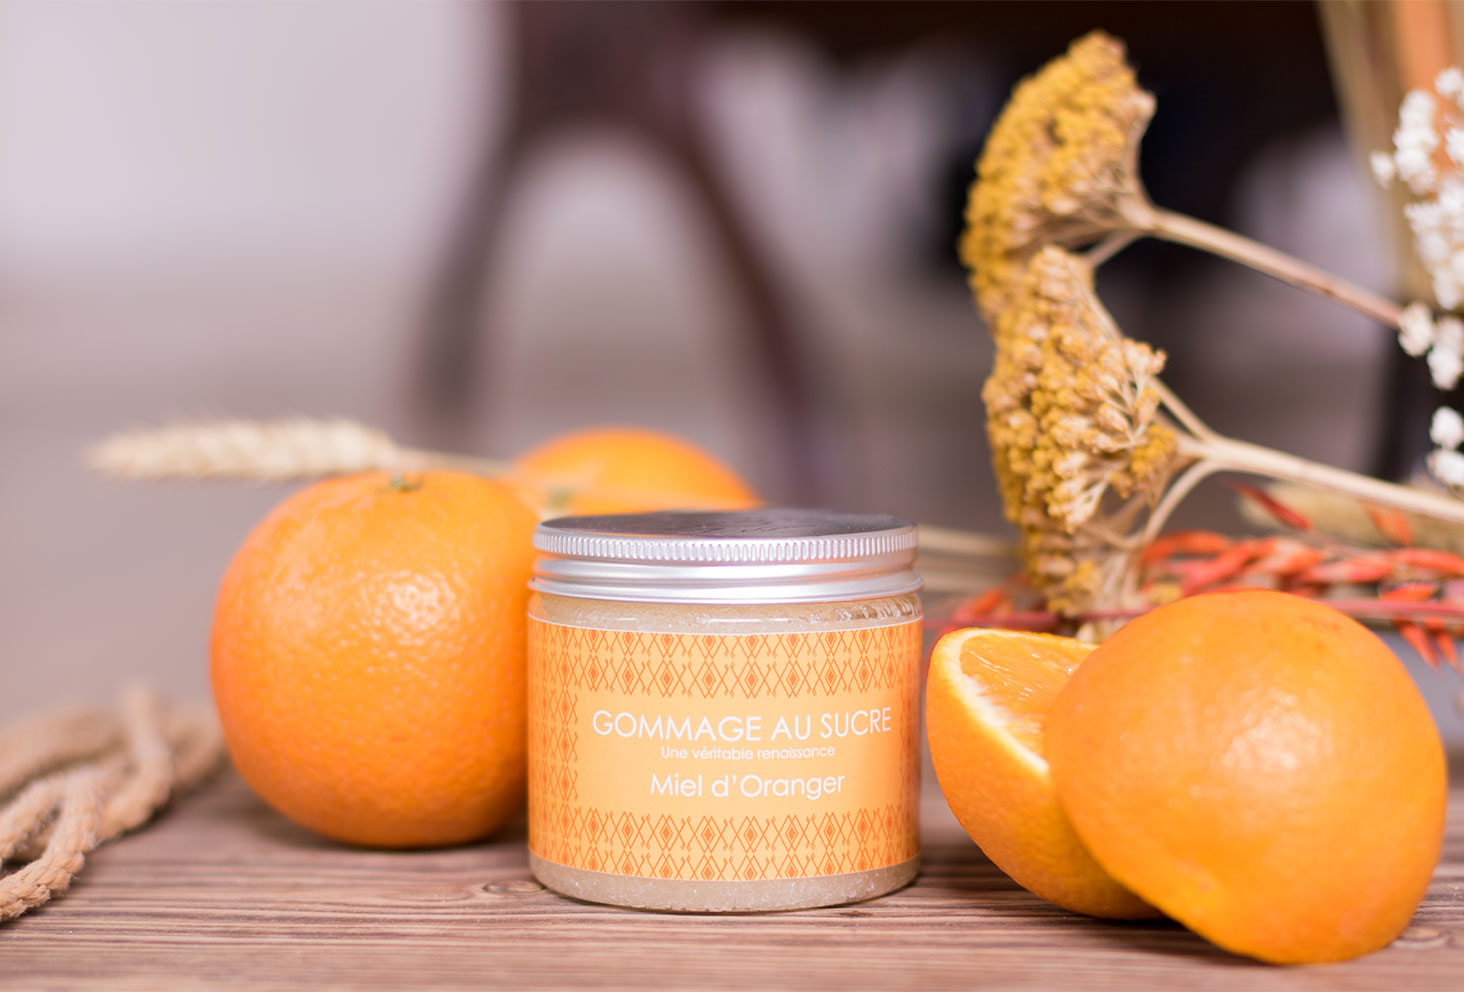 Le gommage au sucre Miel d'Oranger de L'art du Bain sur une planche en bois au milieu des oranges entières et de quelques fleurs sèches